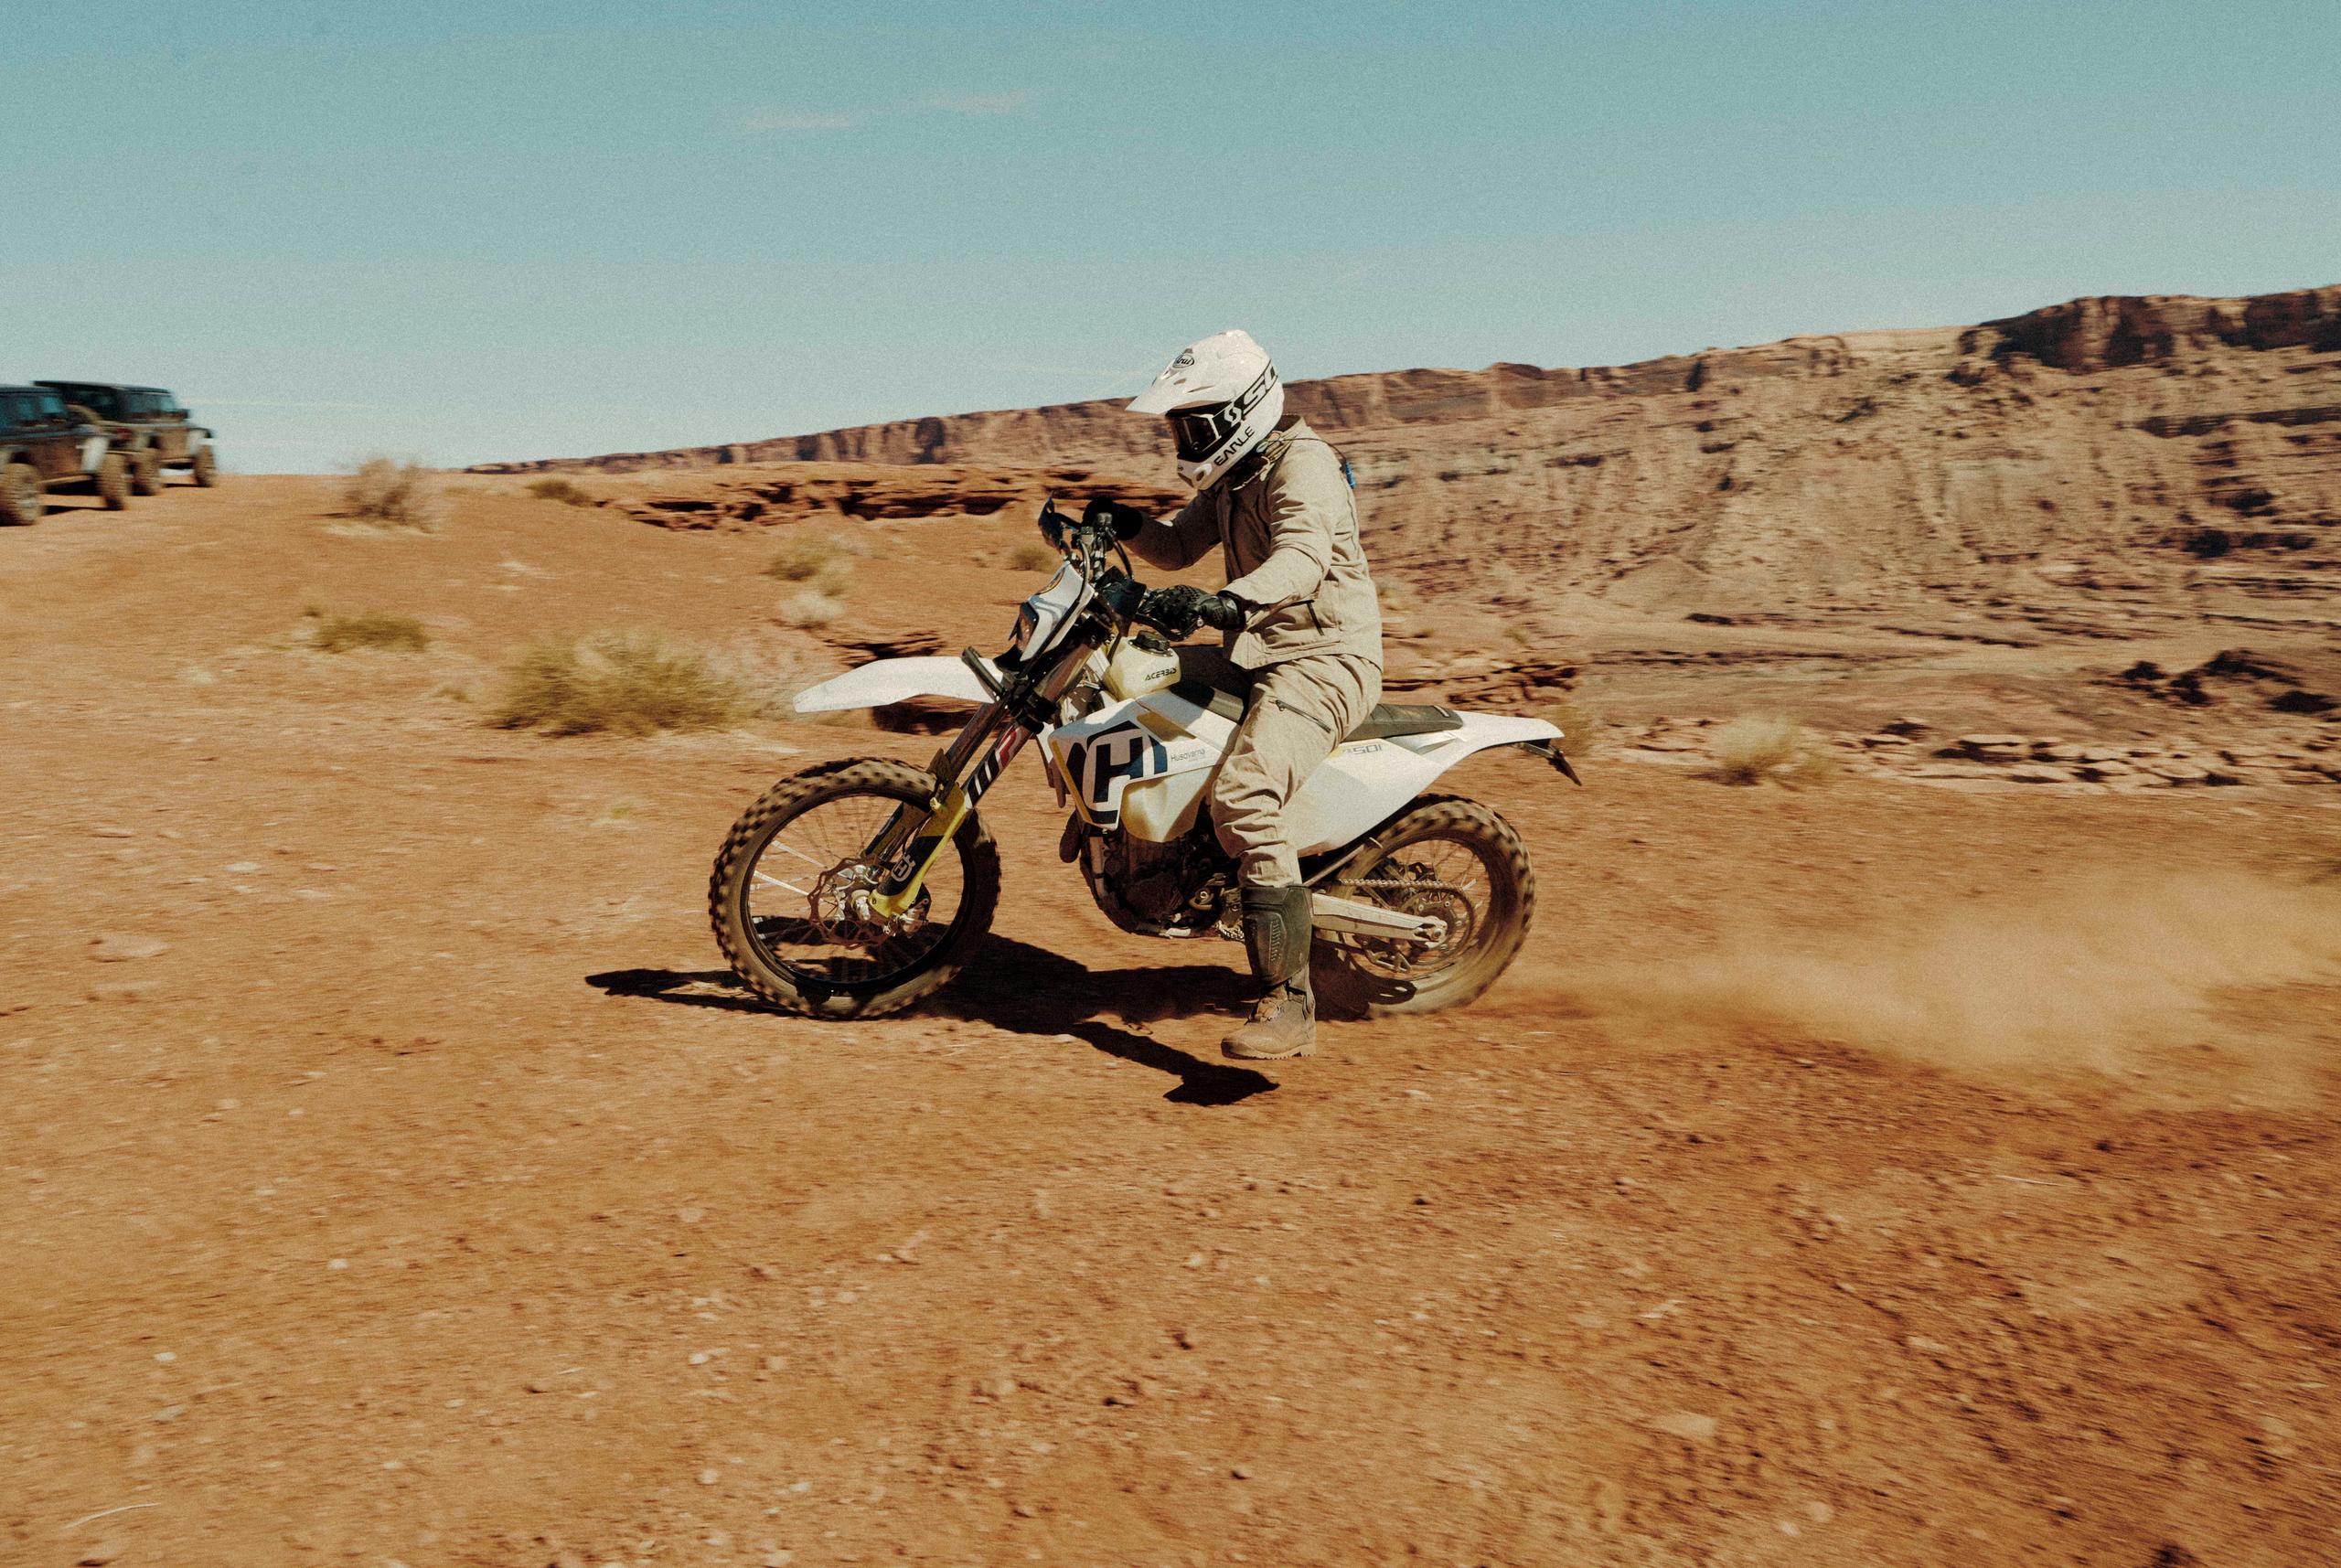 Man on a motocross bike in the desert